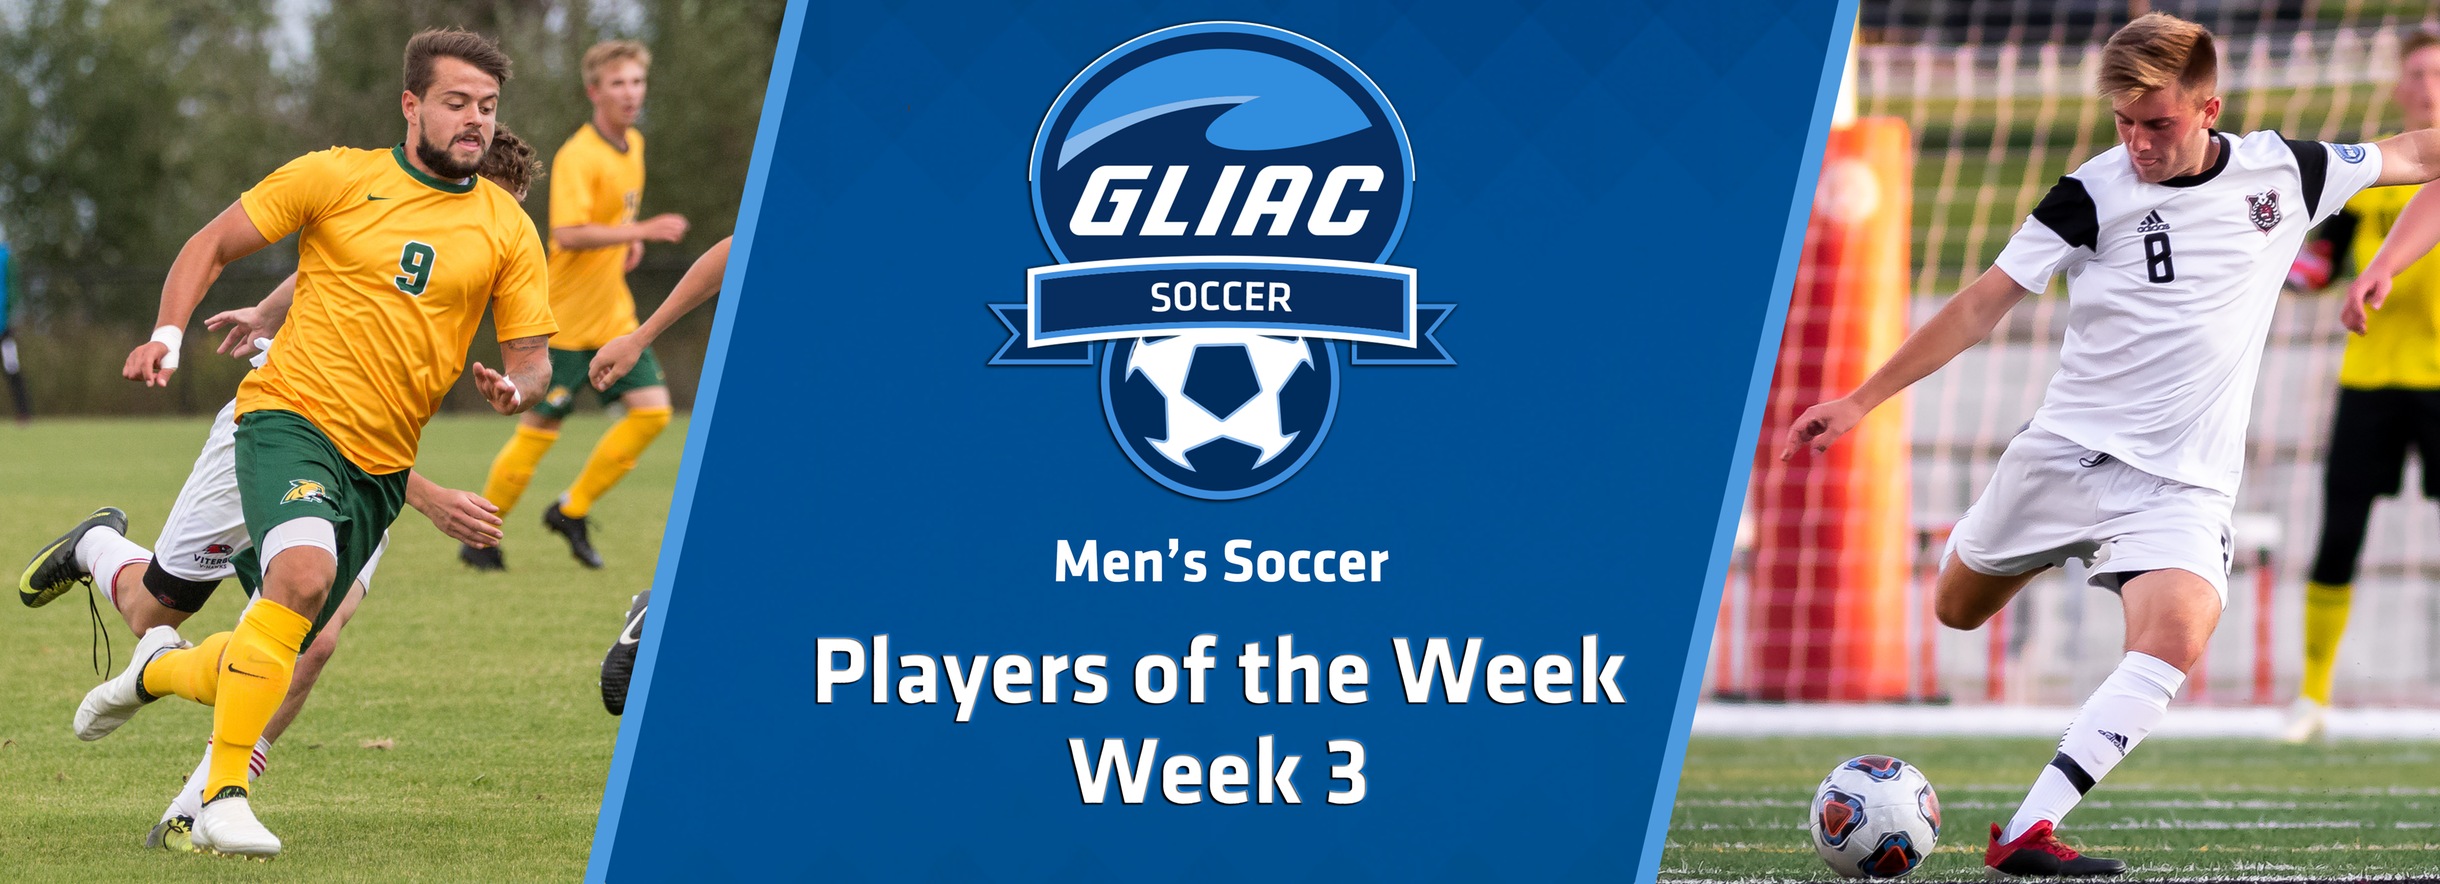 NMU's Lippert and DU's O'Riordan Claim GLIAC Men's Soccer Weekly Honors